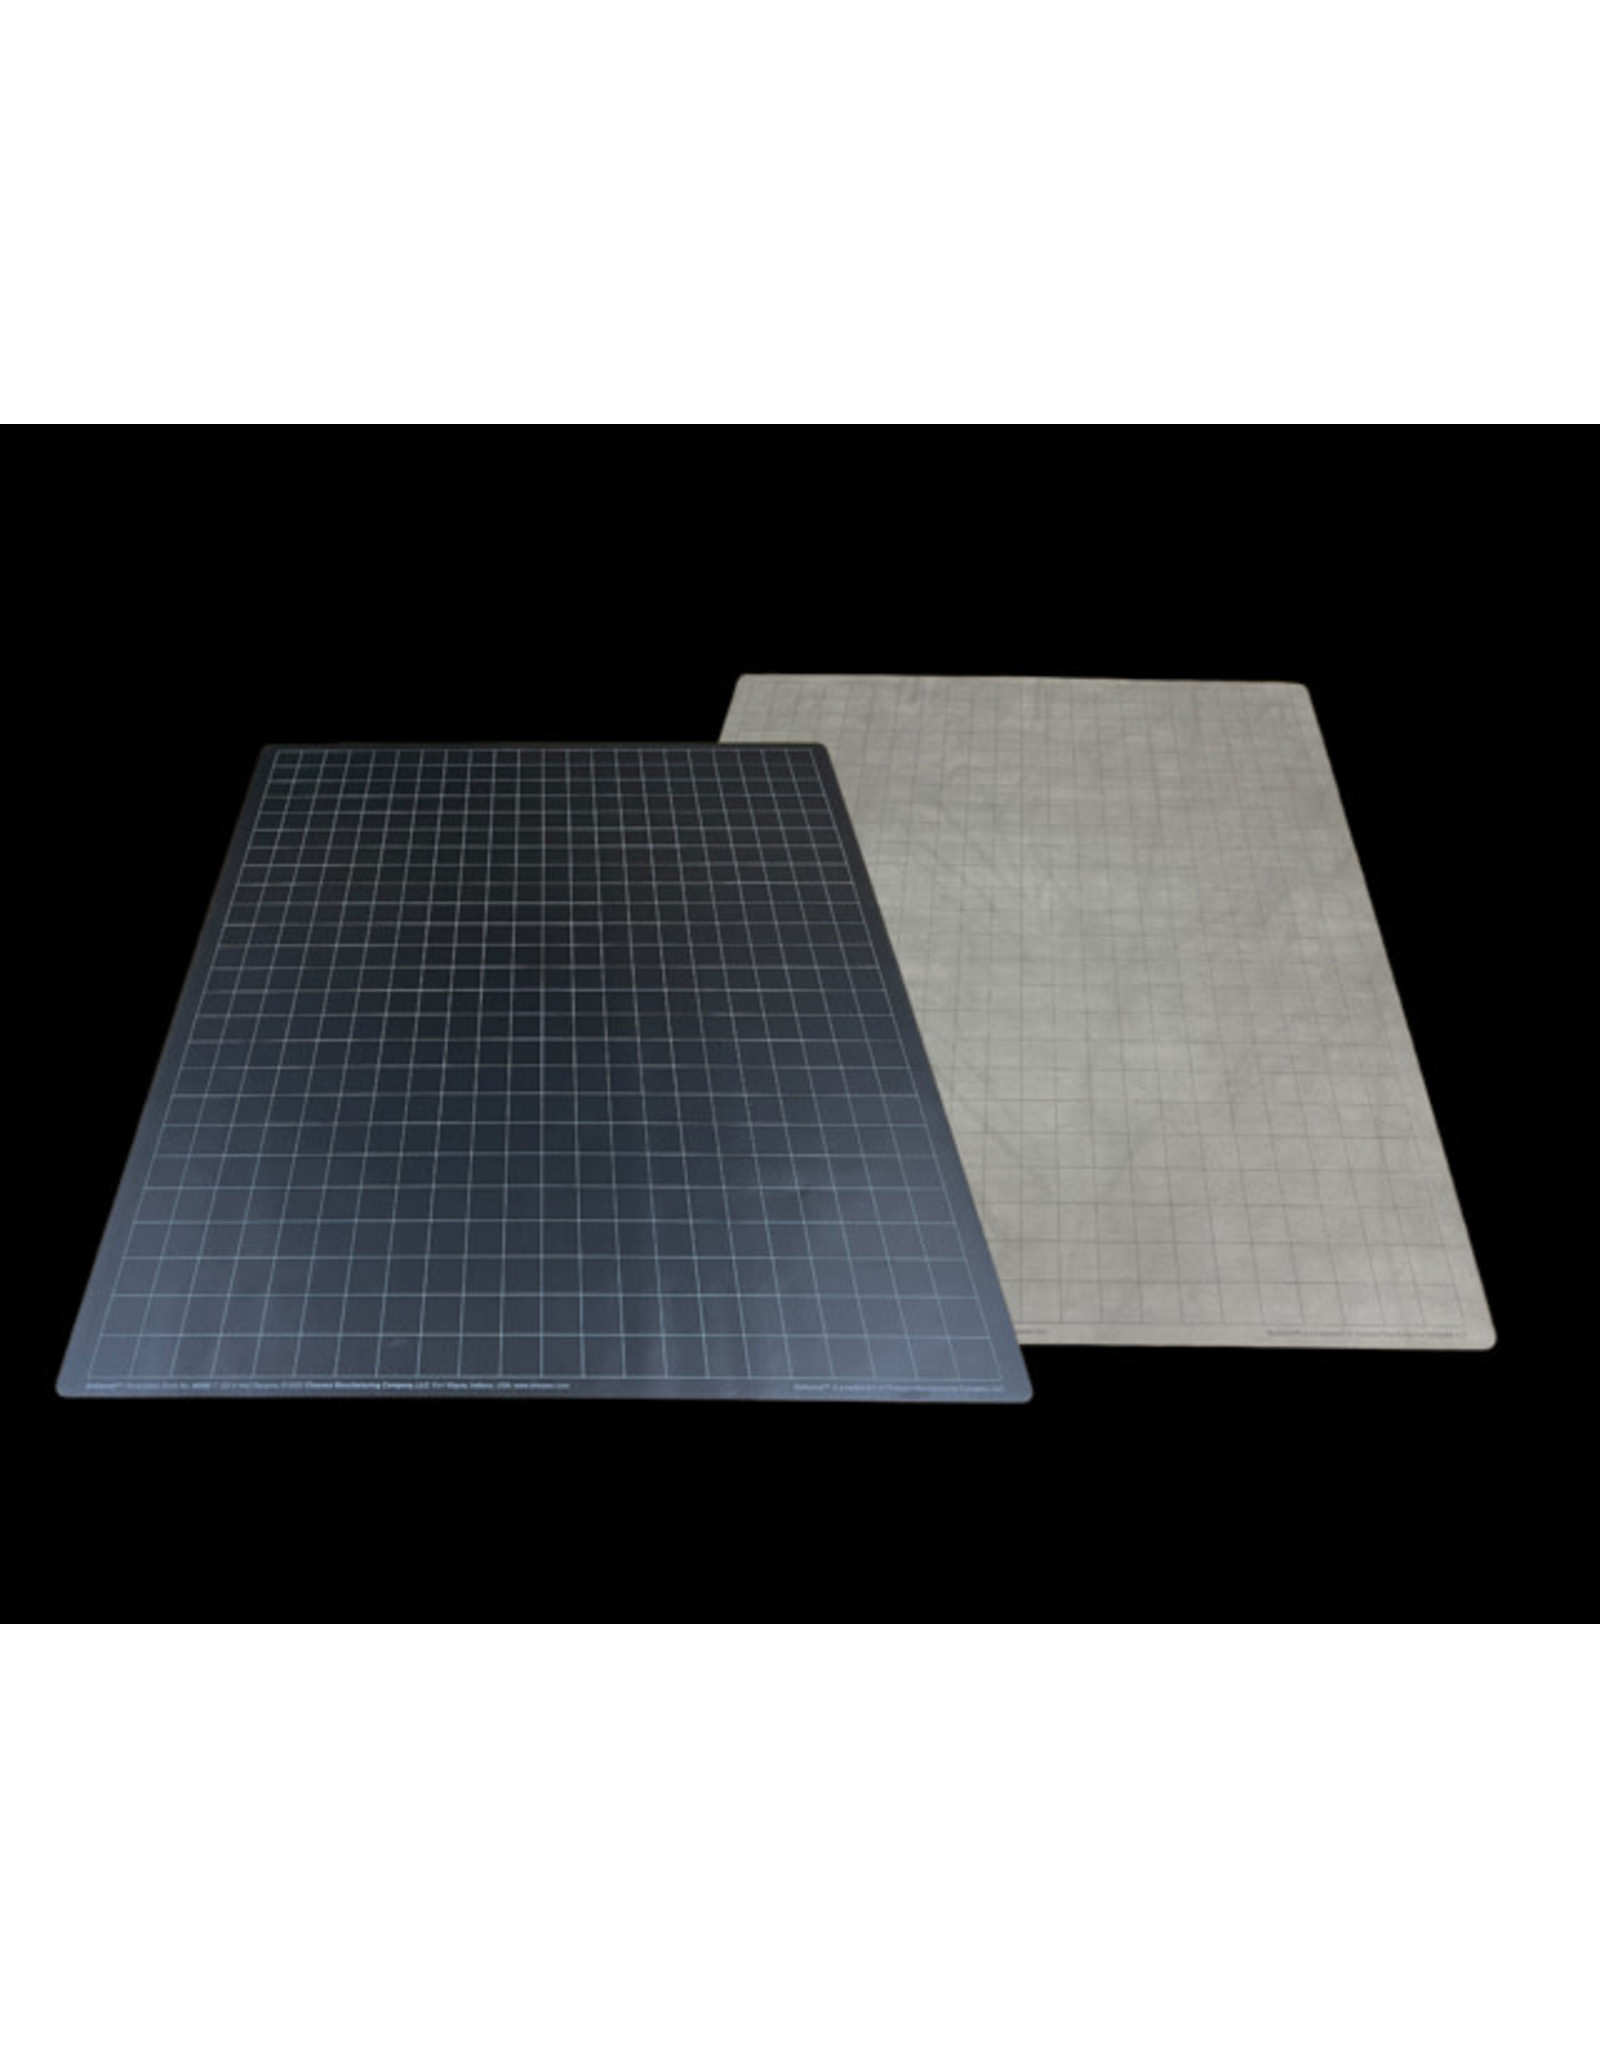 Battlemat 1" Reversible Black-Grey Squares (23½" x 26" Playing Surface)